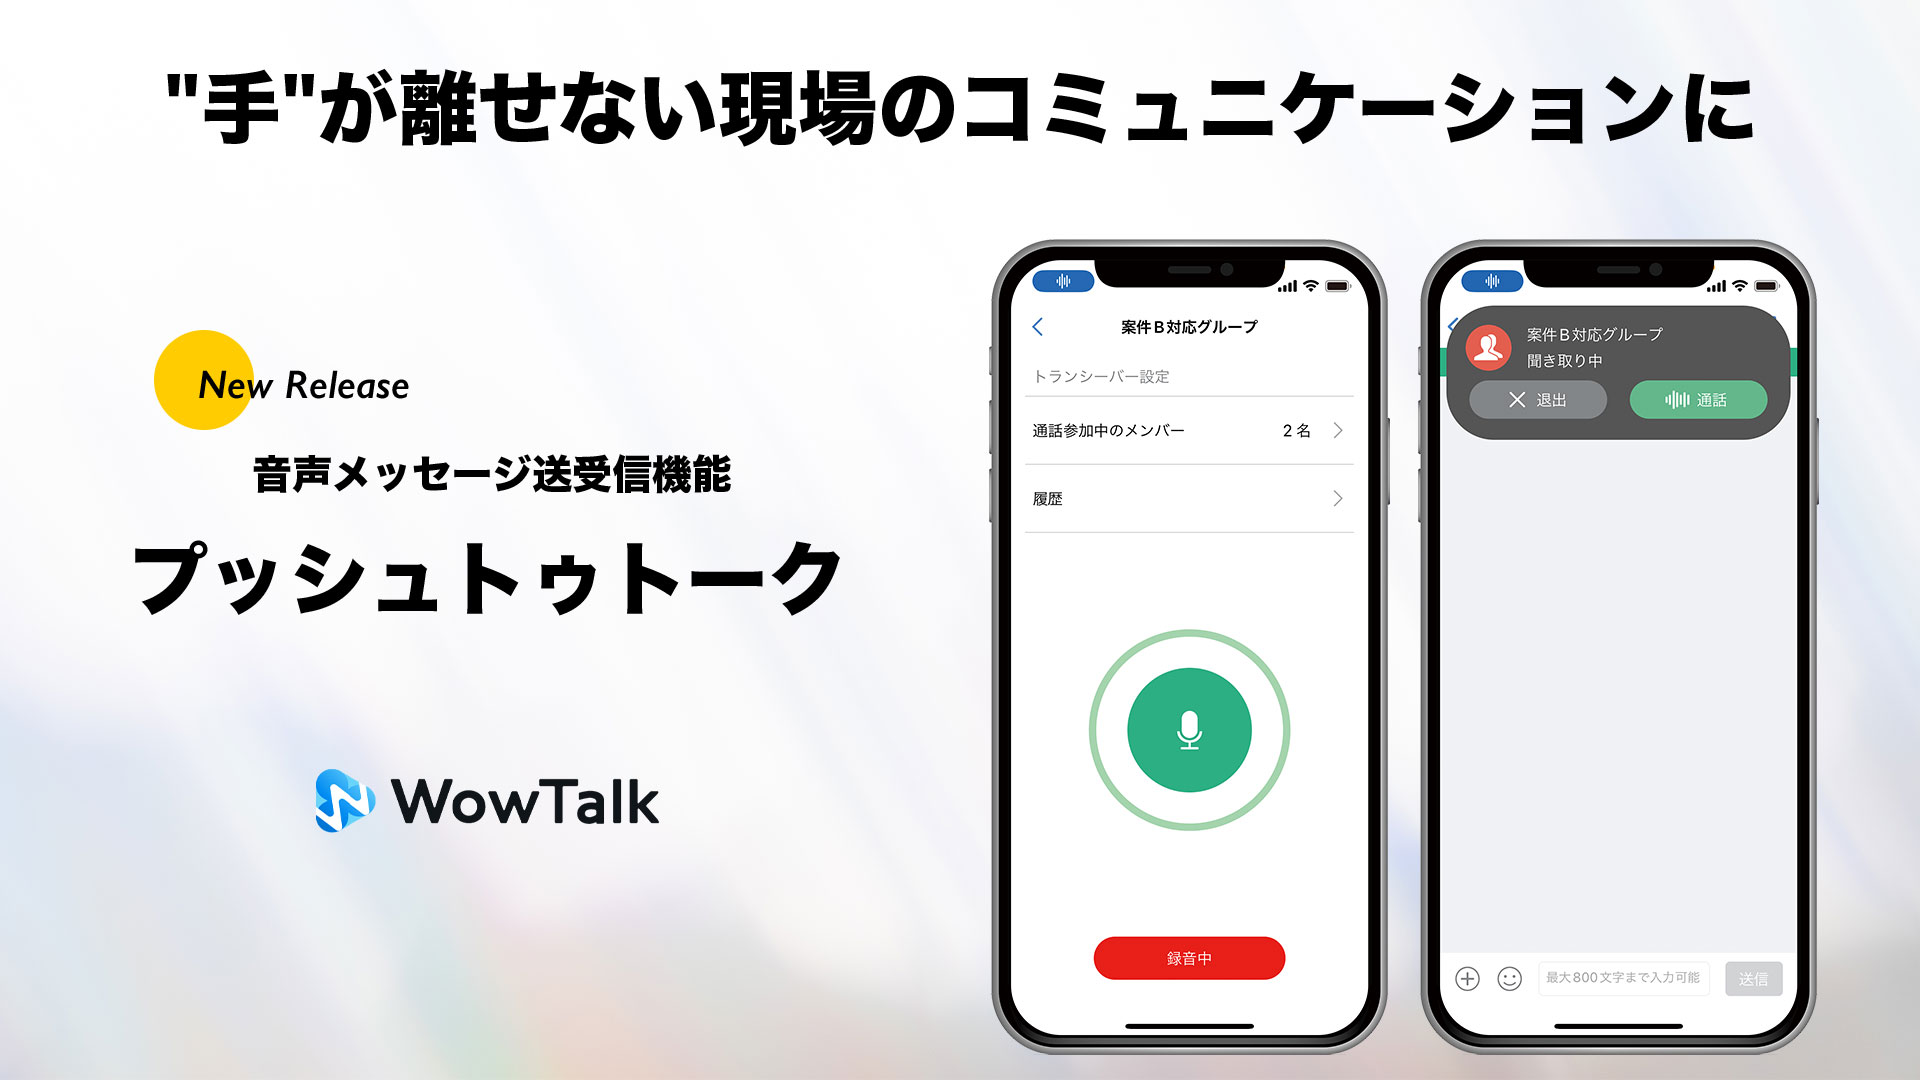 ビジネスチャット・社内SNS「WowTalk」に、スマホが操作できない現場のコミュニケーションで役立つ音声メッセージ送受